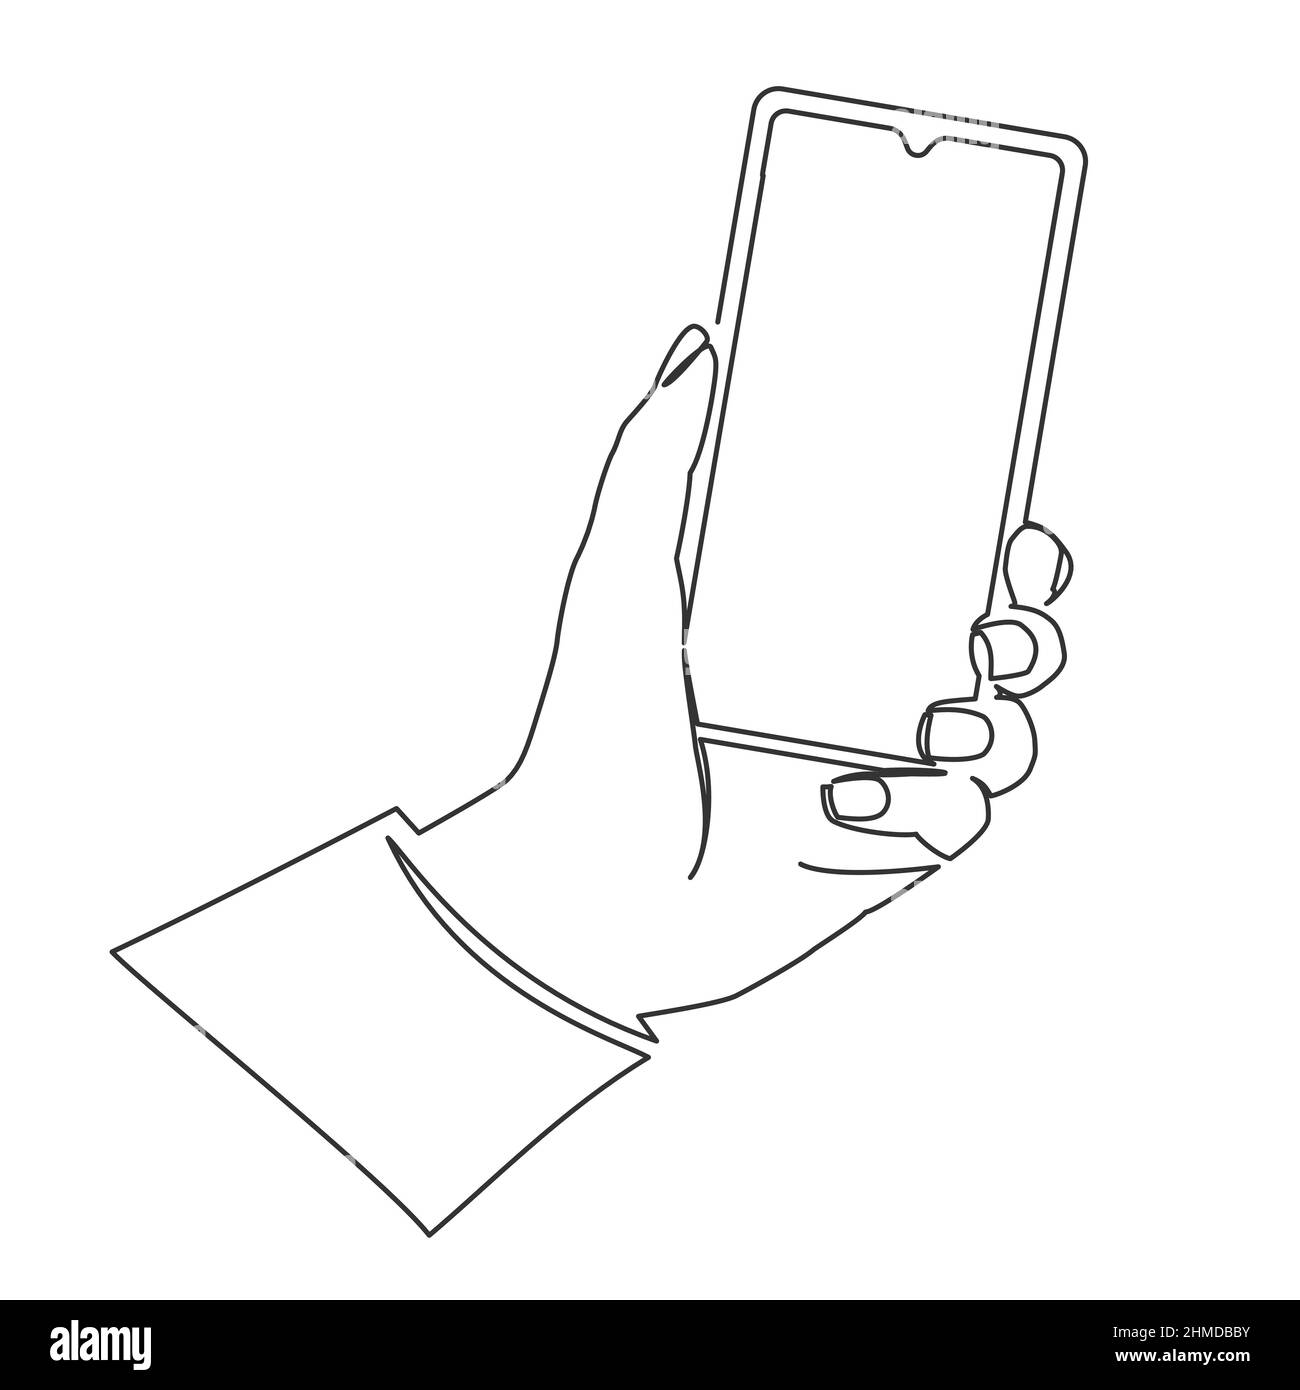 dessin en ligne continu d'un smartphone portable, d'un téléphone portable  monoligne dans une illustration vectorielle à la main Image Vectorielle  Stock - Alamy